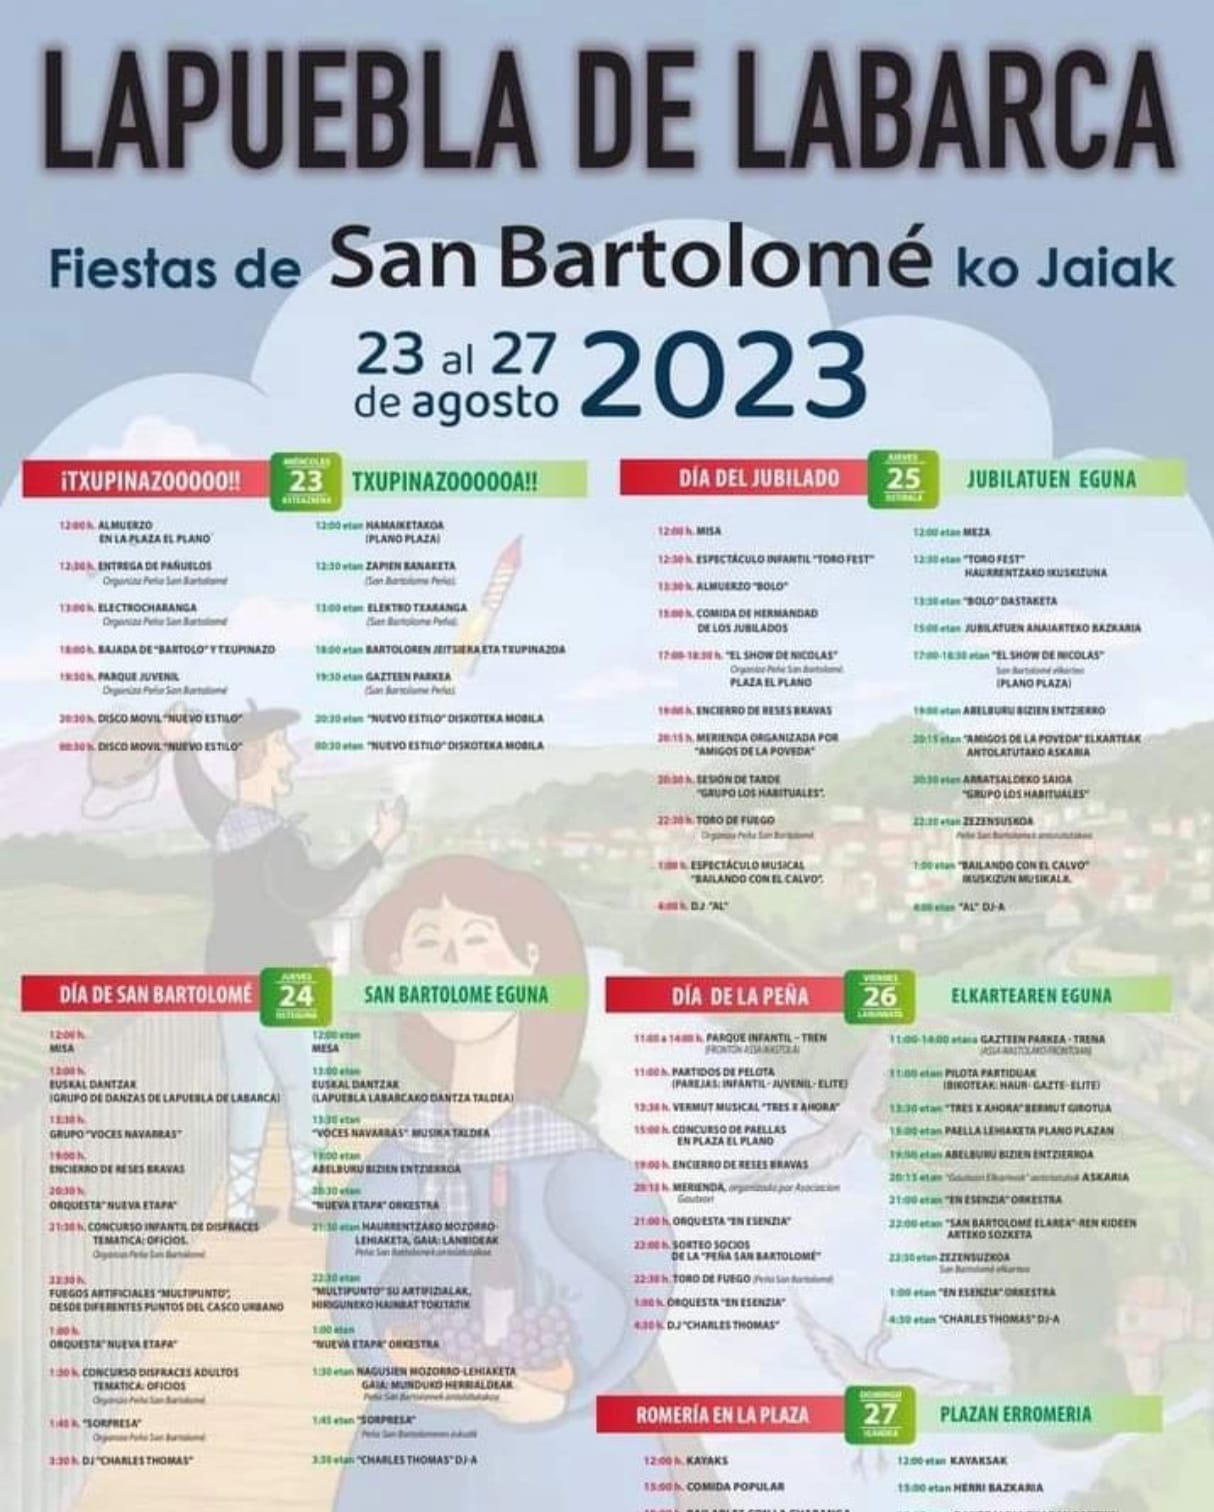 Fiestas Lapuebla de Labarca 2023